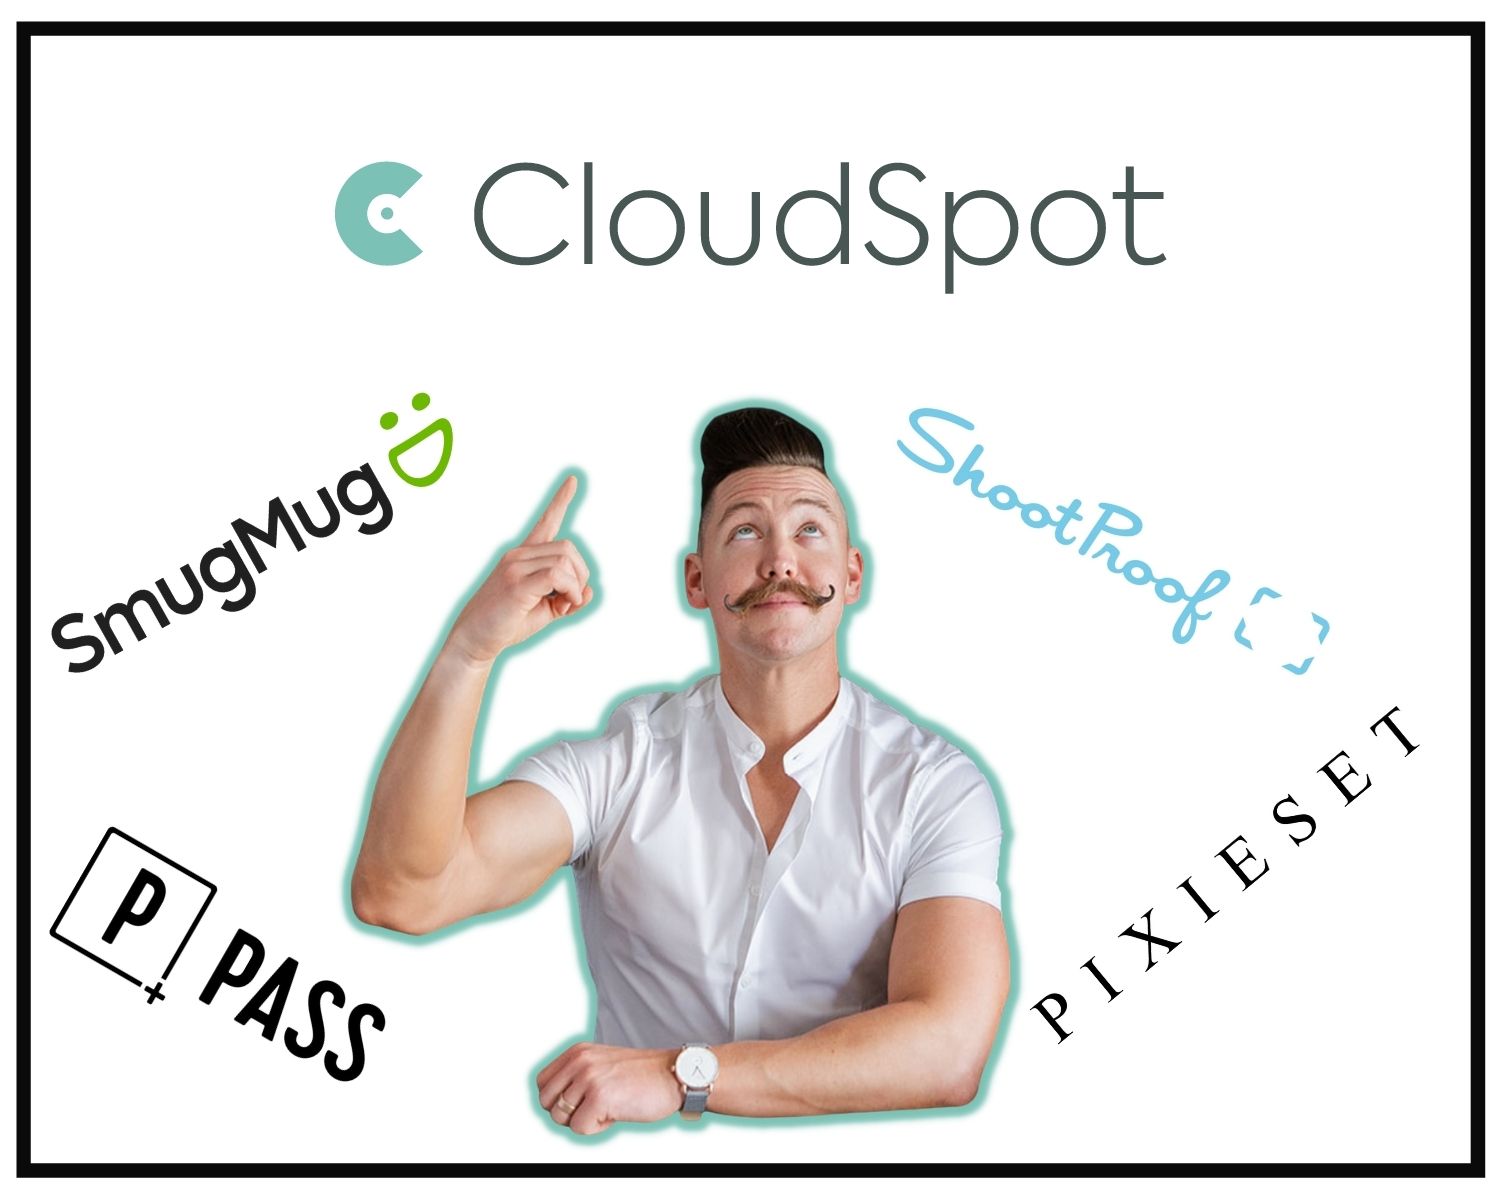 cloudspot image hosting software